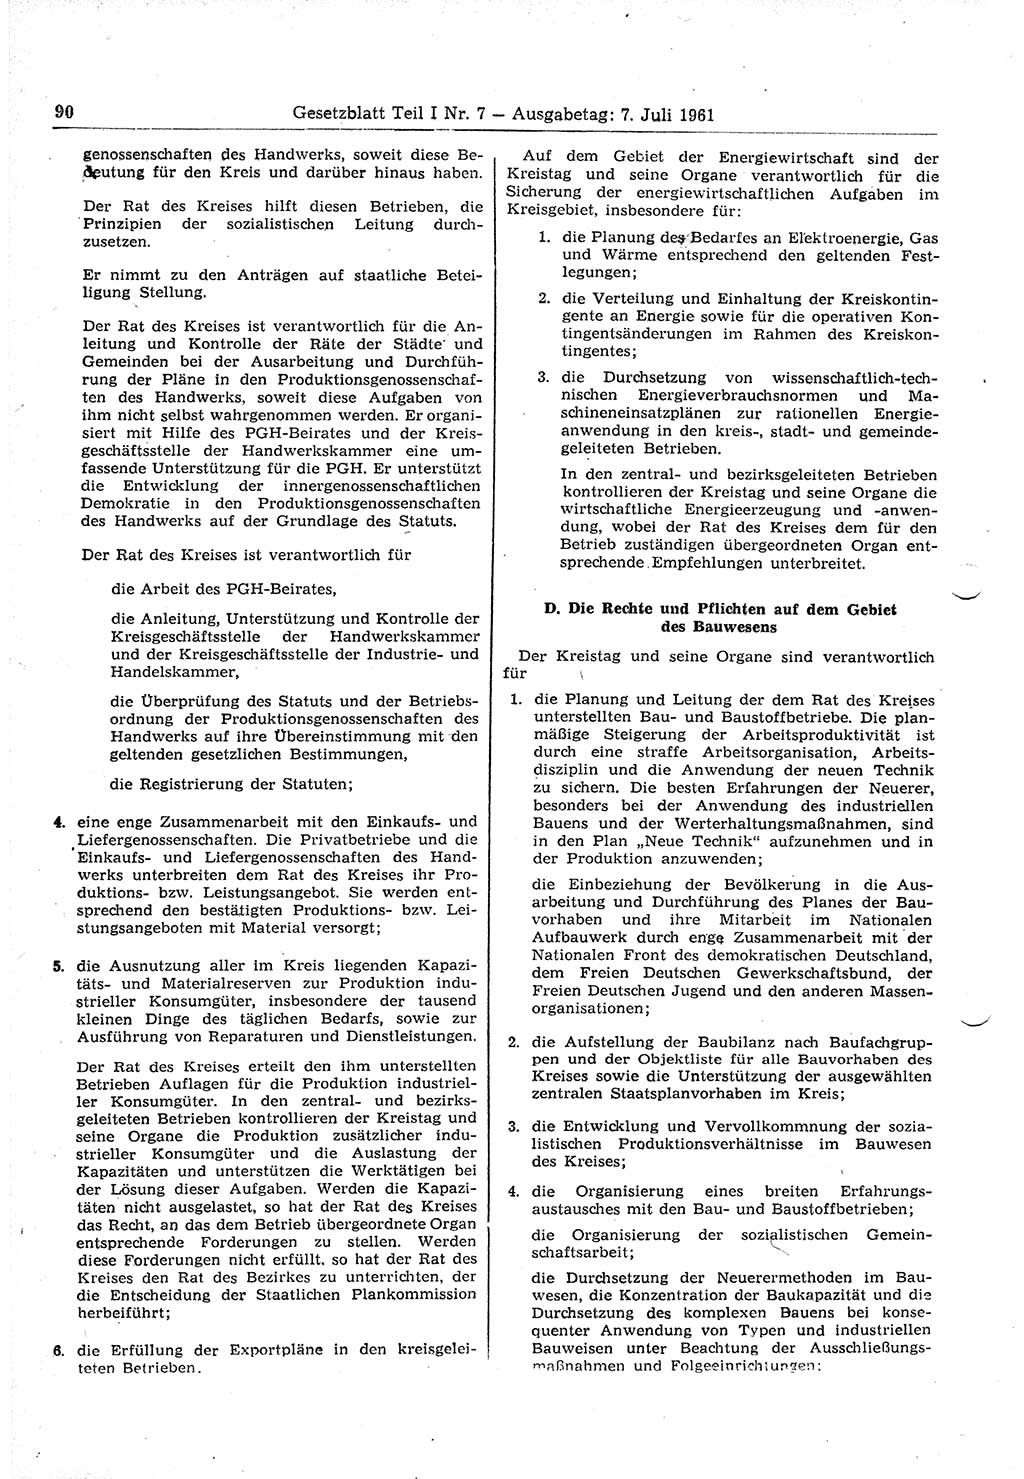 Gesetzblatt (GBl.) der Deutschen Demokratischen Republik (DDR) Teil Ⅰ 1961, Seite 90 (GBl. DDR Ⅰ 1961, S. 90)